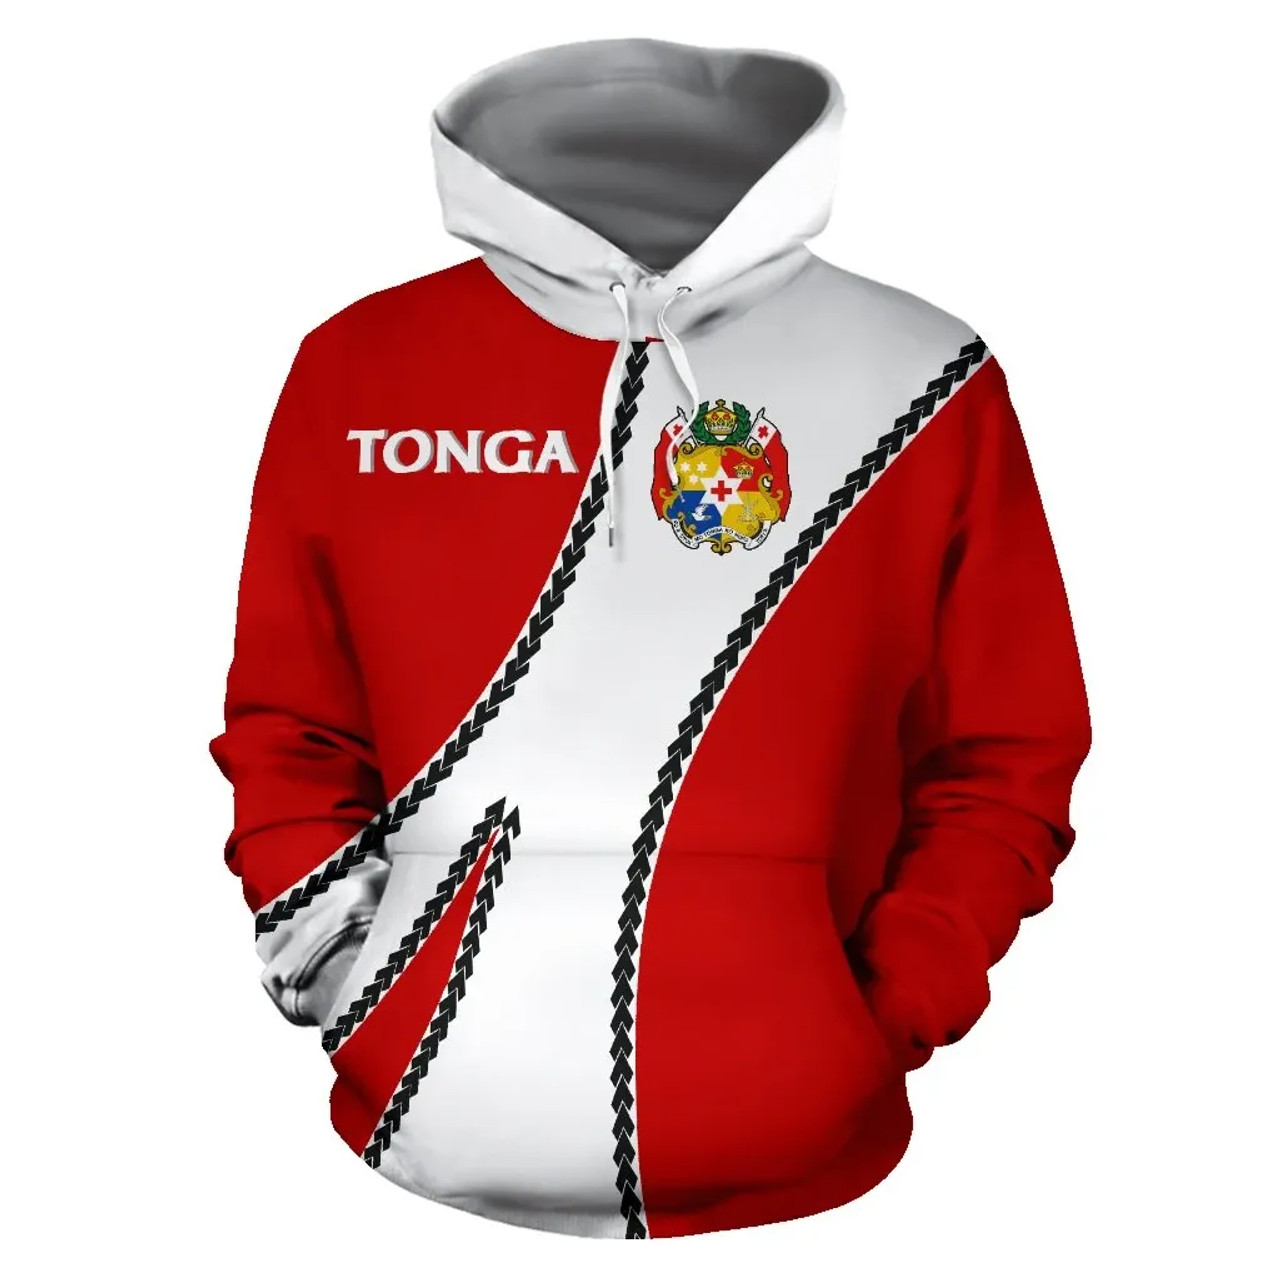 Tonga Hoodie - Tonga Coat Of Arms Sports Style